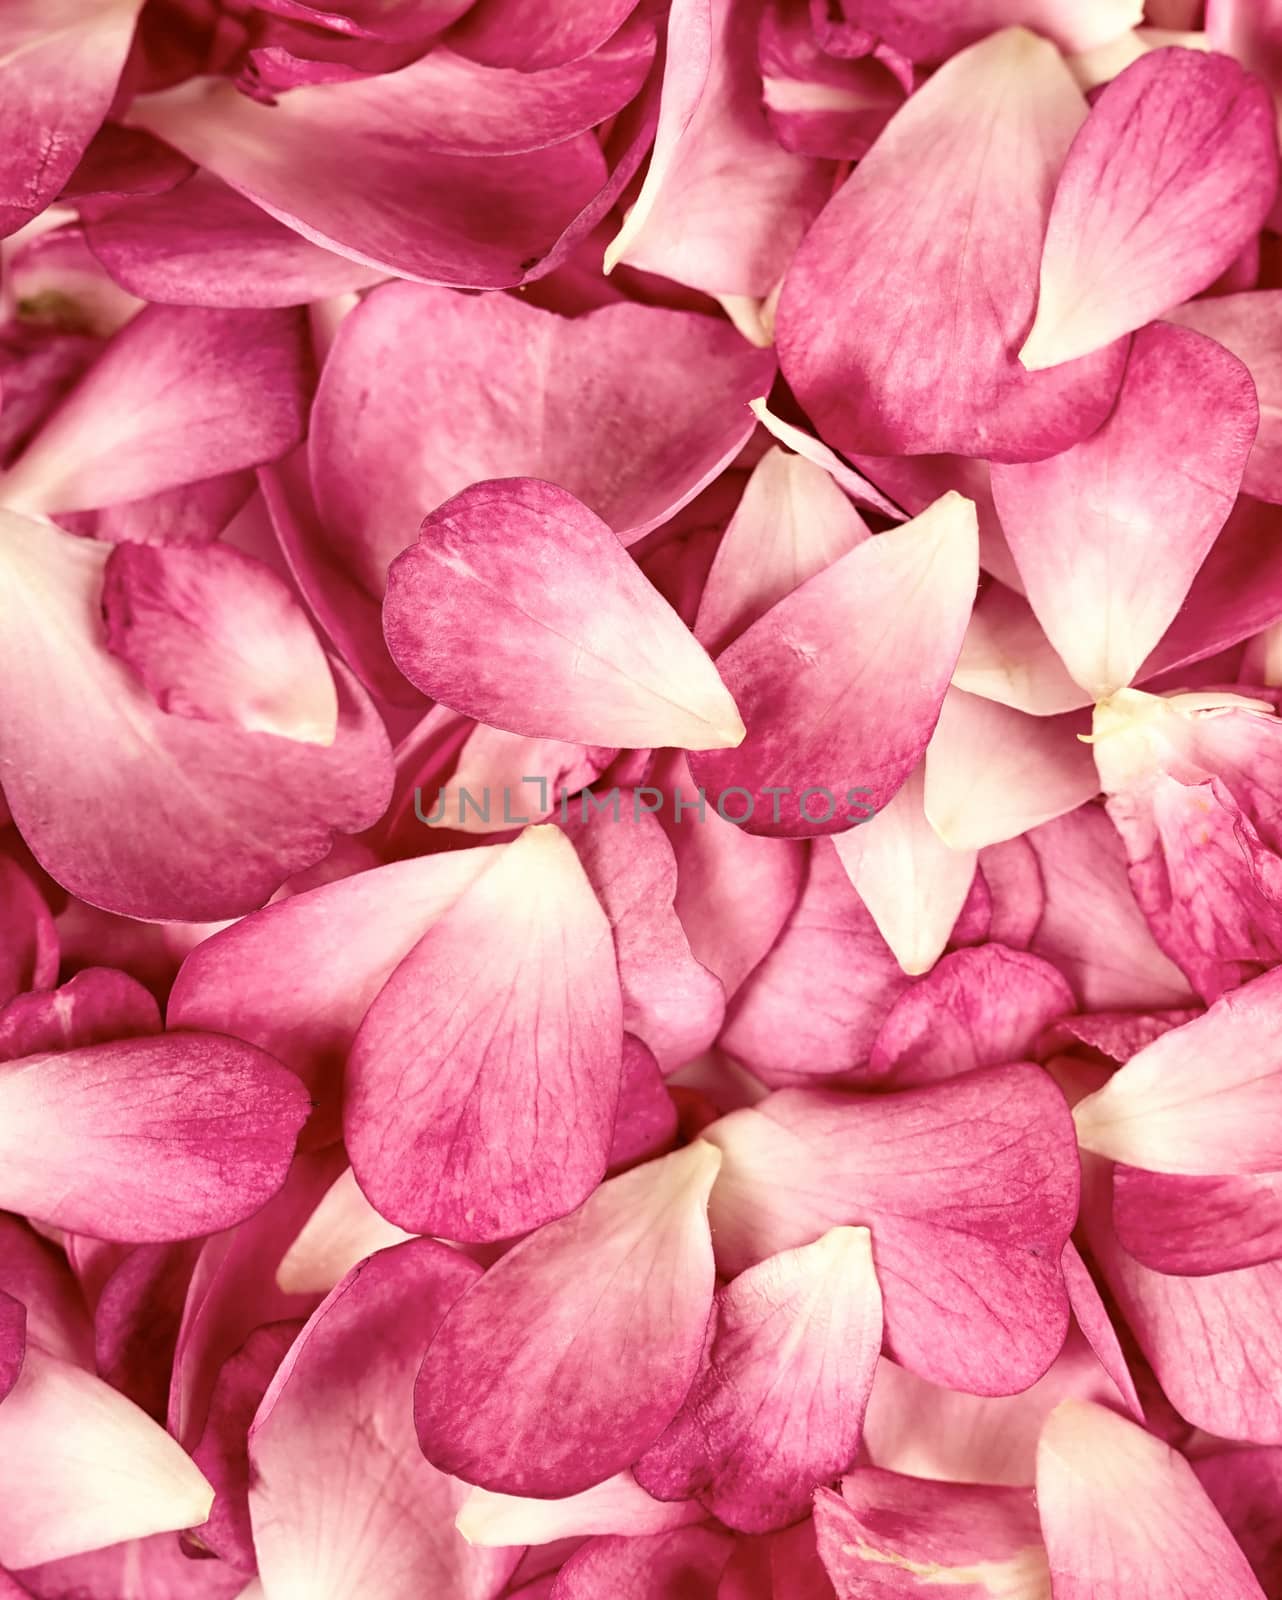 Pink rose petals background